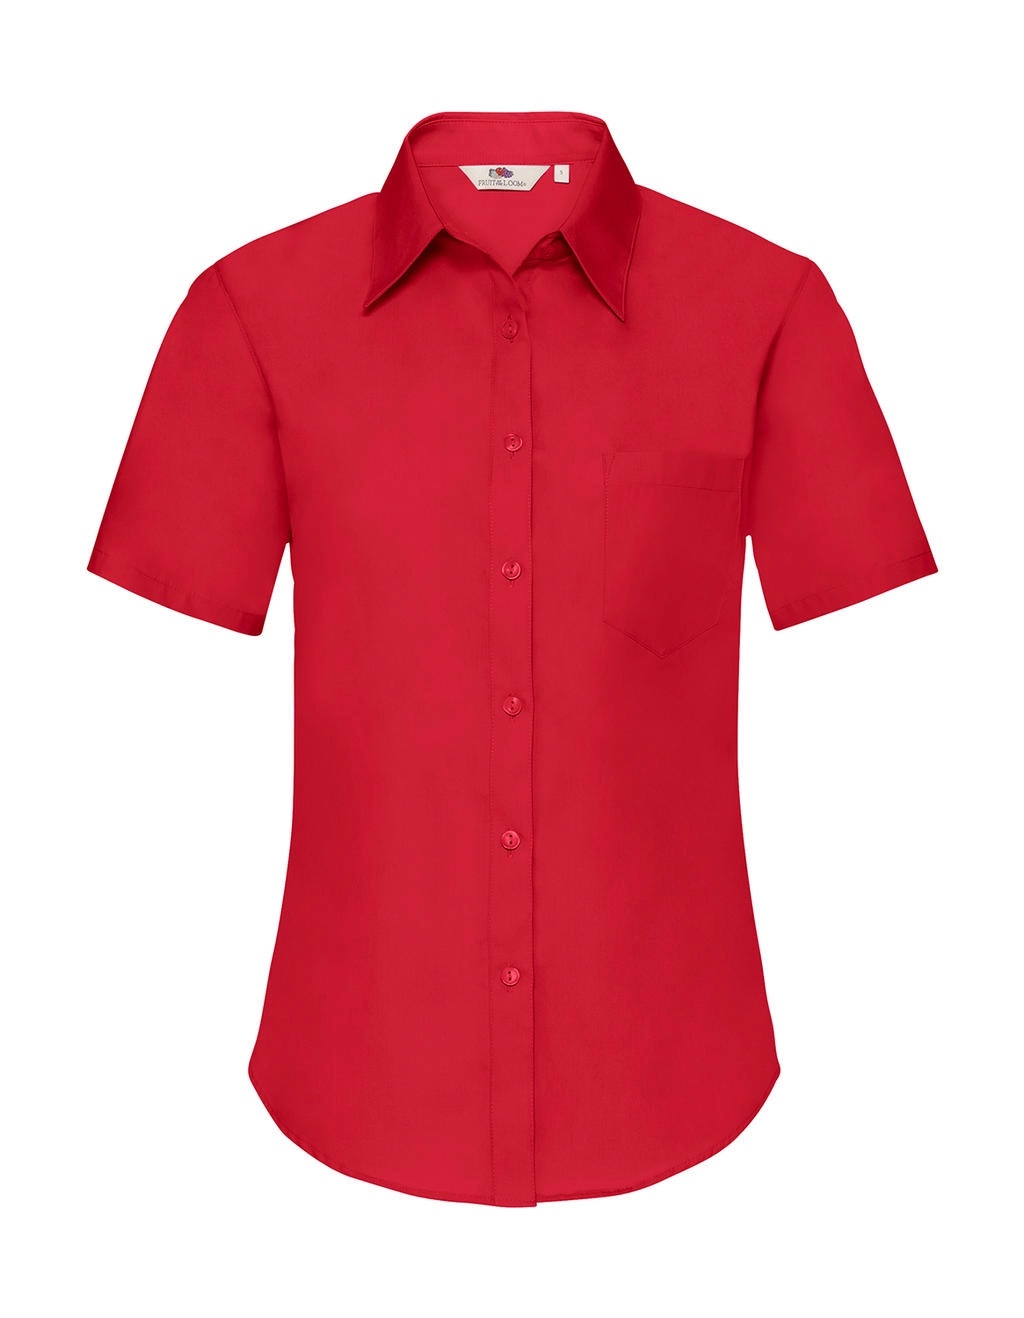 Ladies` Poplin Shirt zum Besticken und Bedrucken in der Farbe Red mit Ihren Logo, Schriftzug oder Motiv.